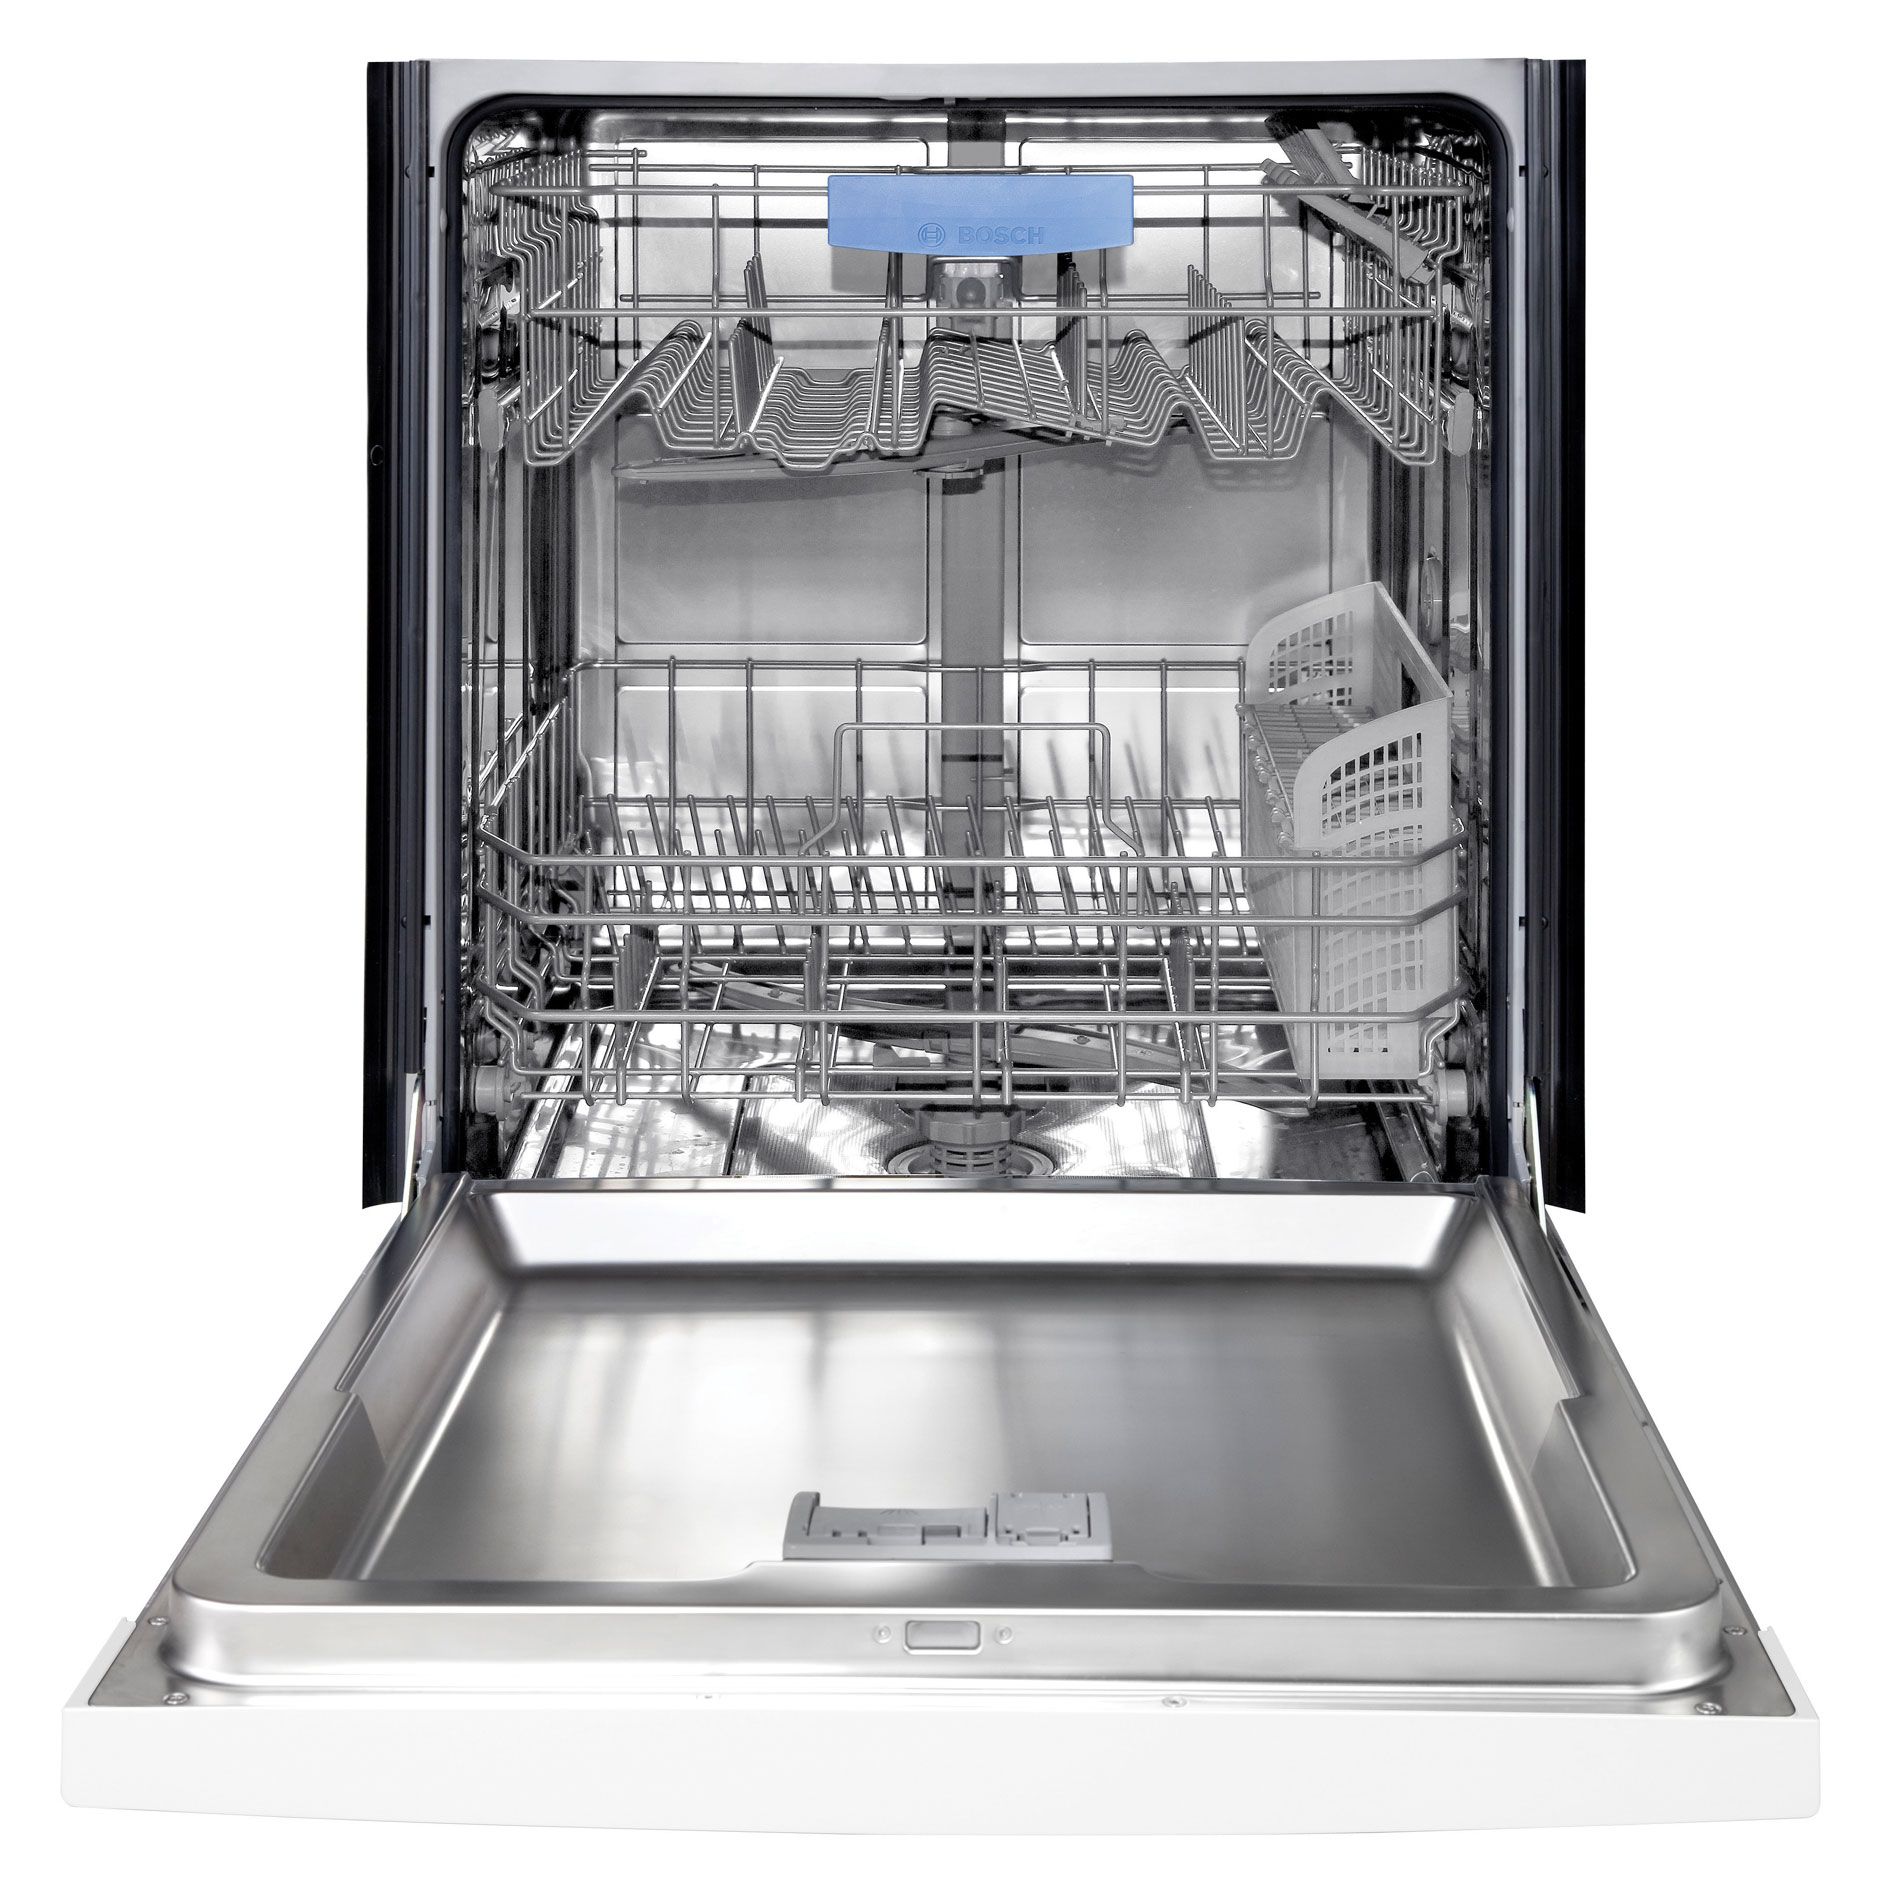 bosch dishwasher model she3ar72uc